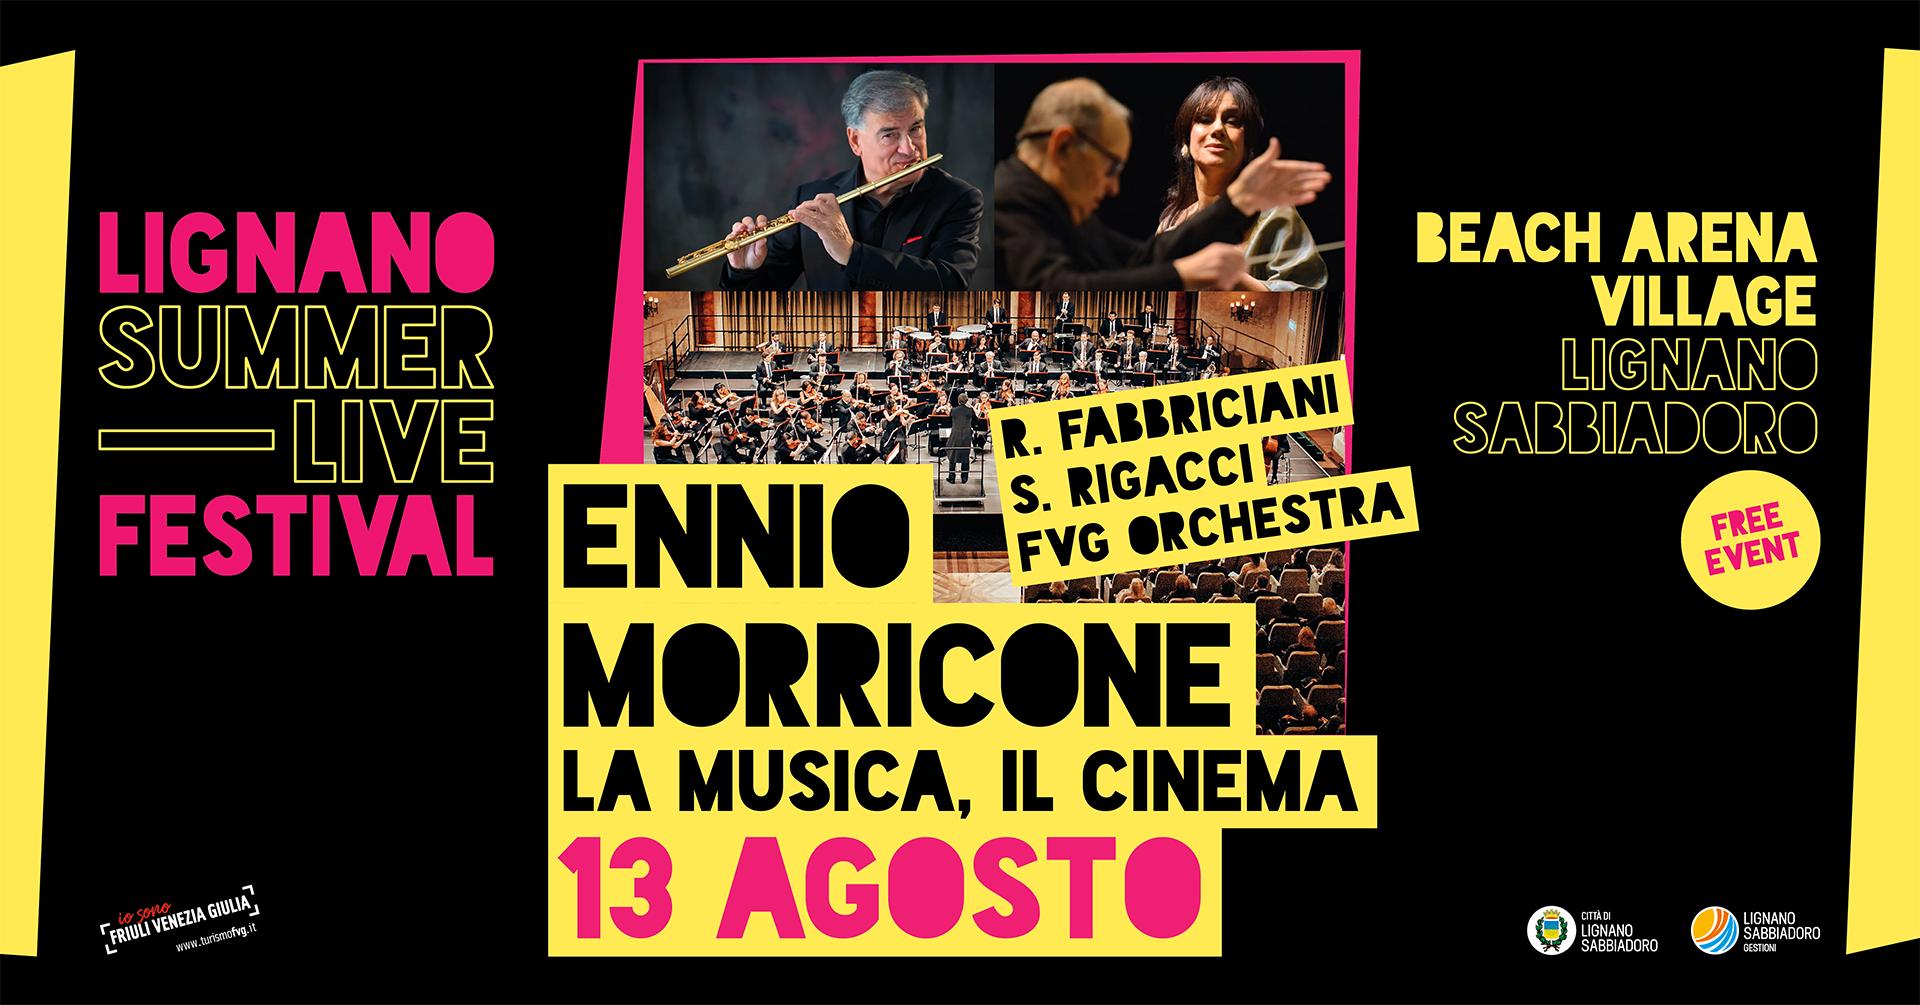 Ennio Morricone, La Musica, Il Cinema, Summer Live Festival